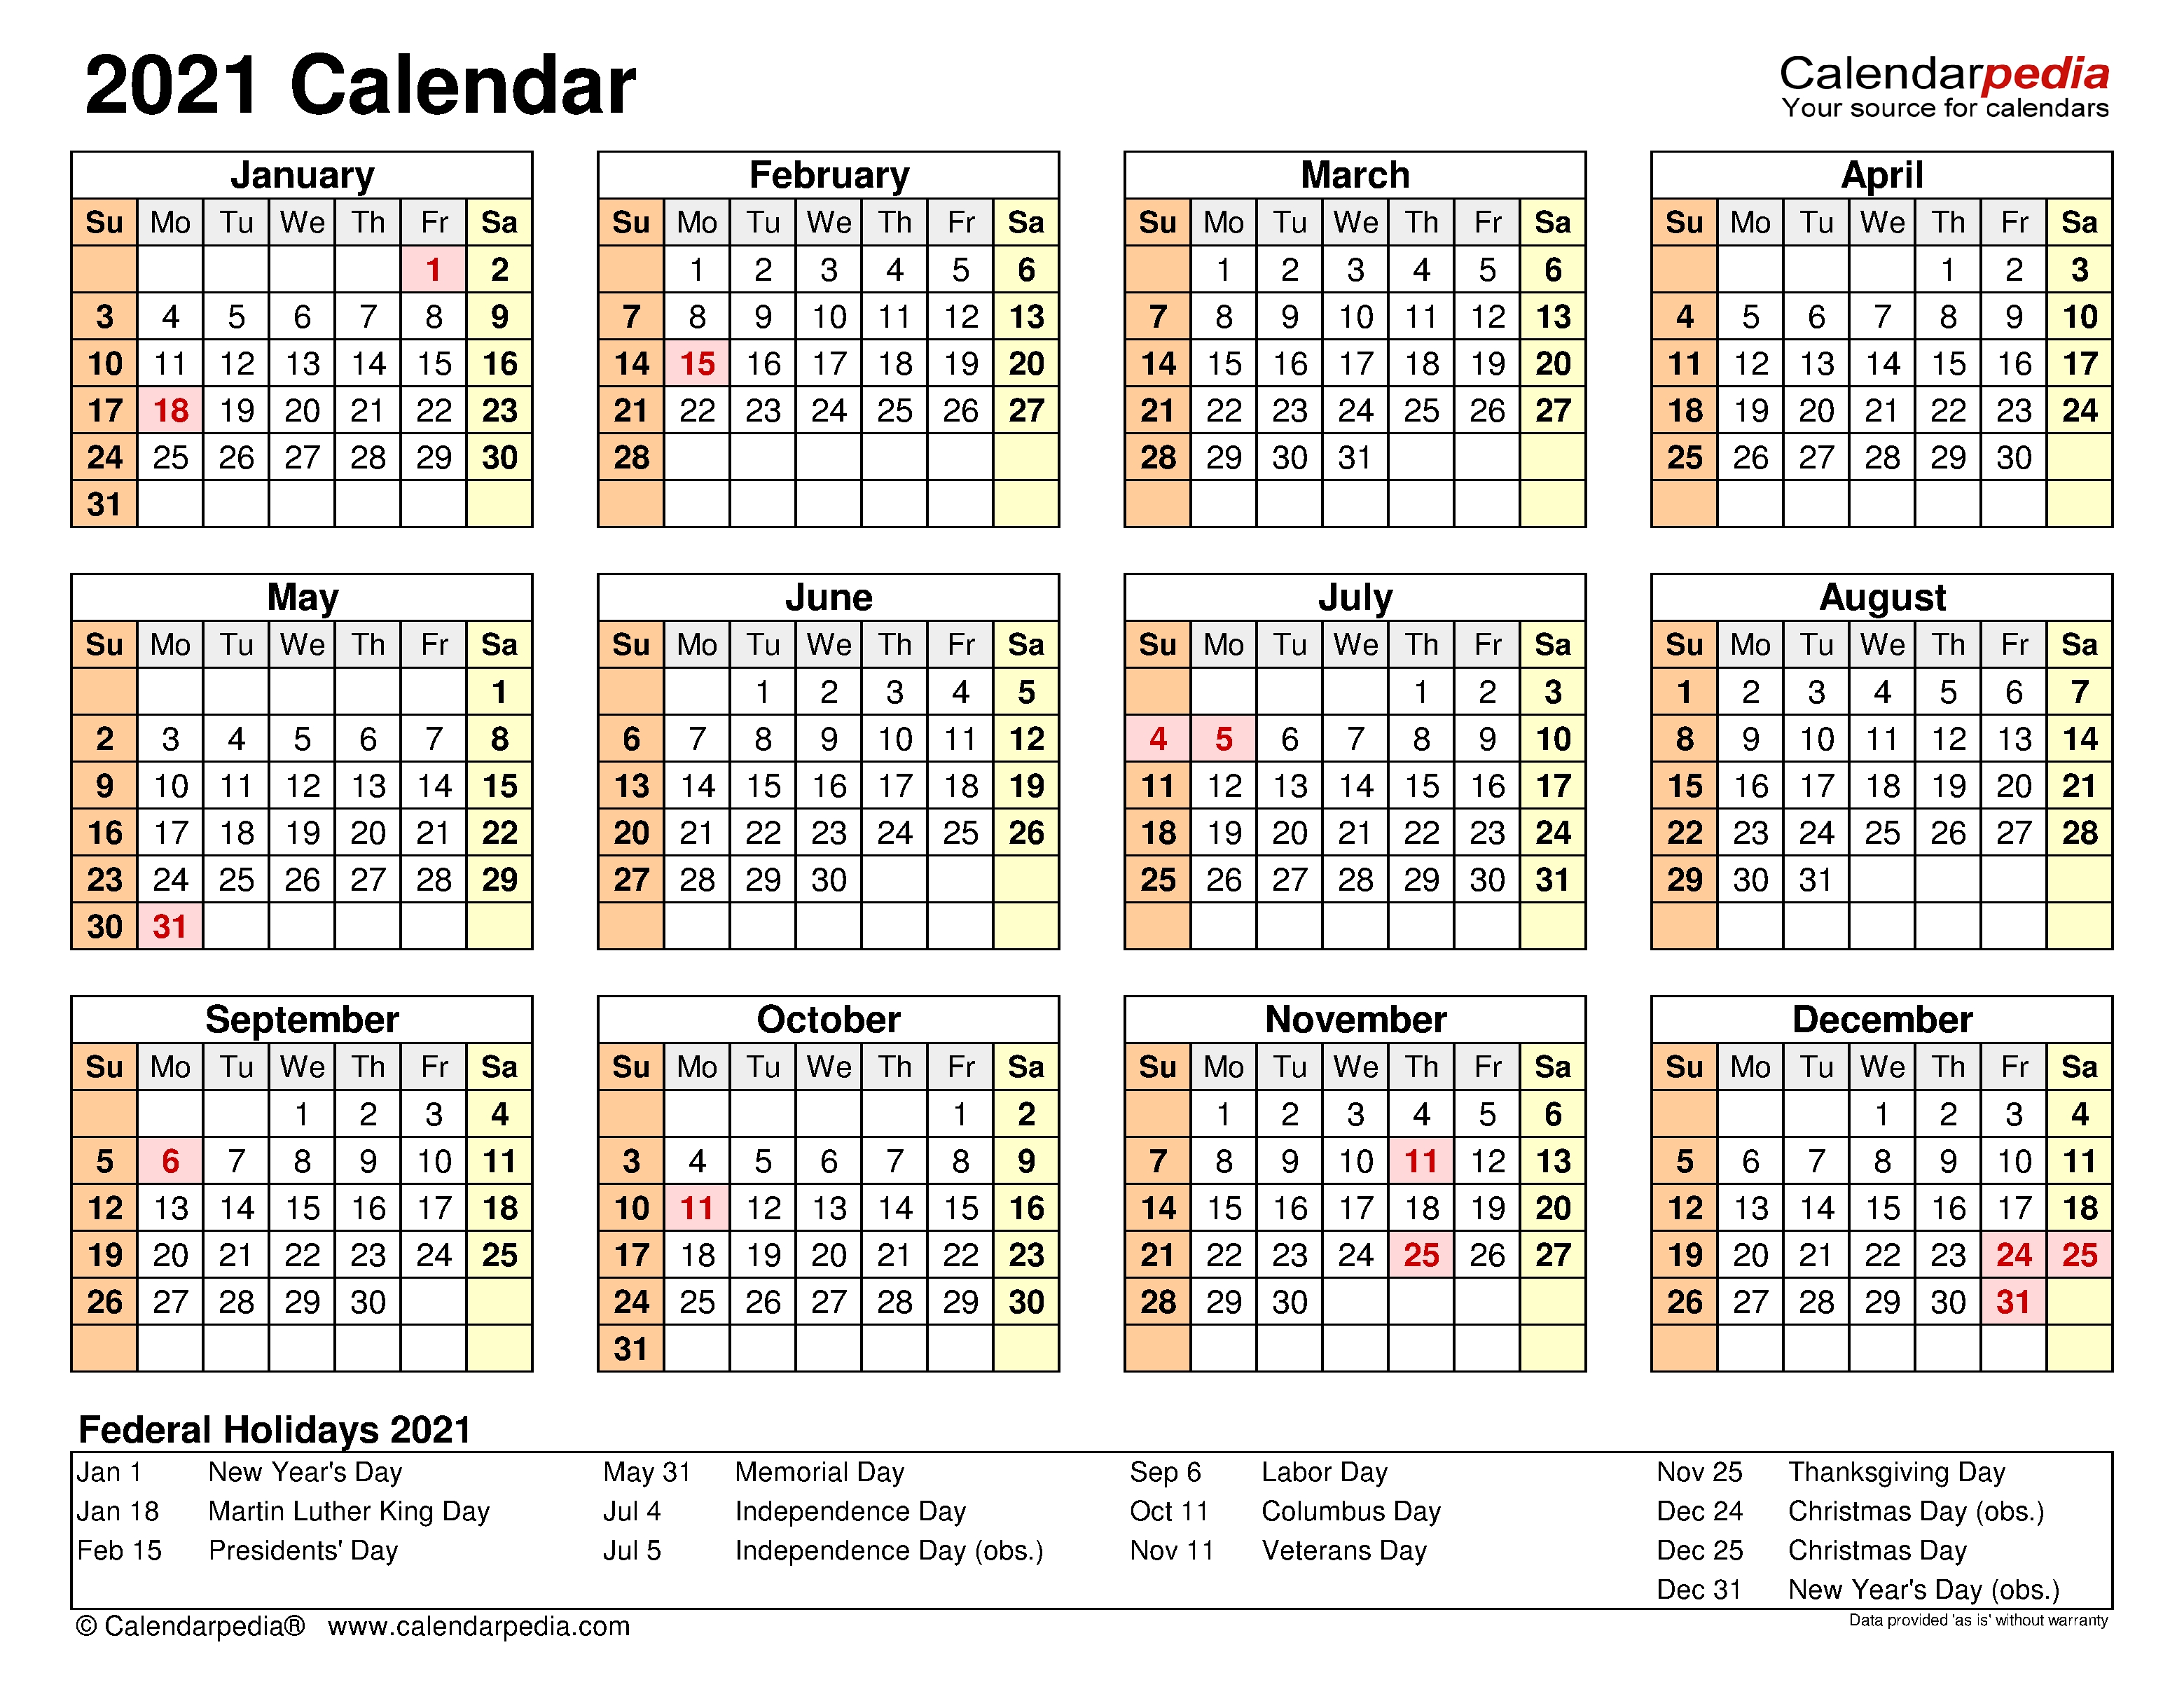 2021 Calendar - Free Printable Excel Templates - Calendarpedia Calendario 2021 Excel